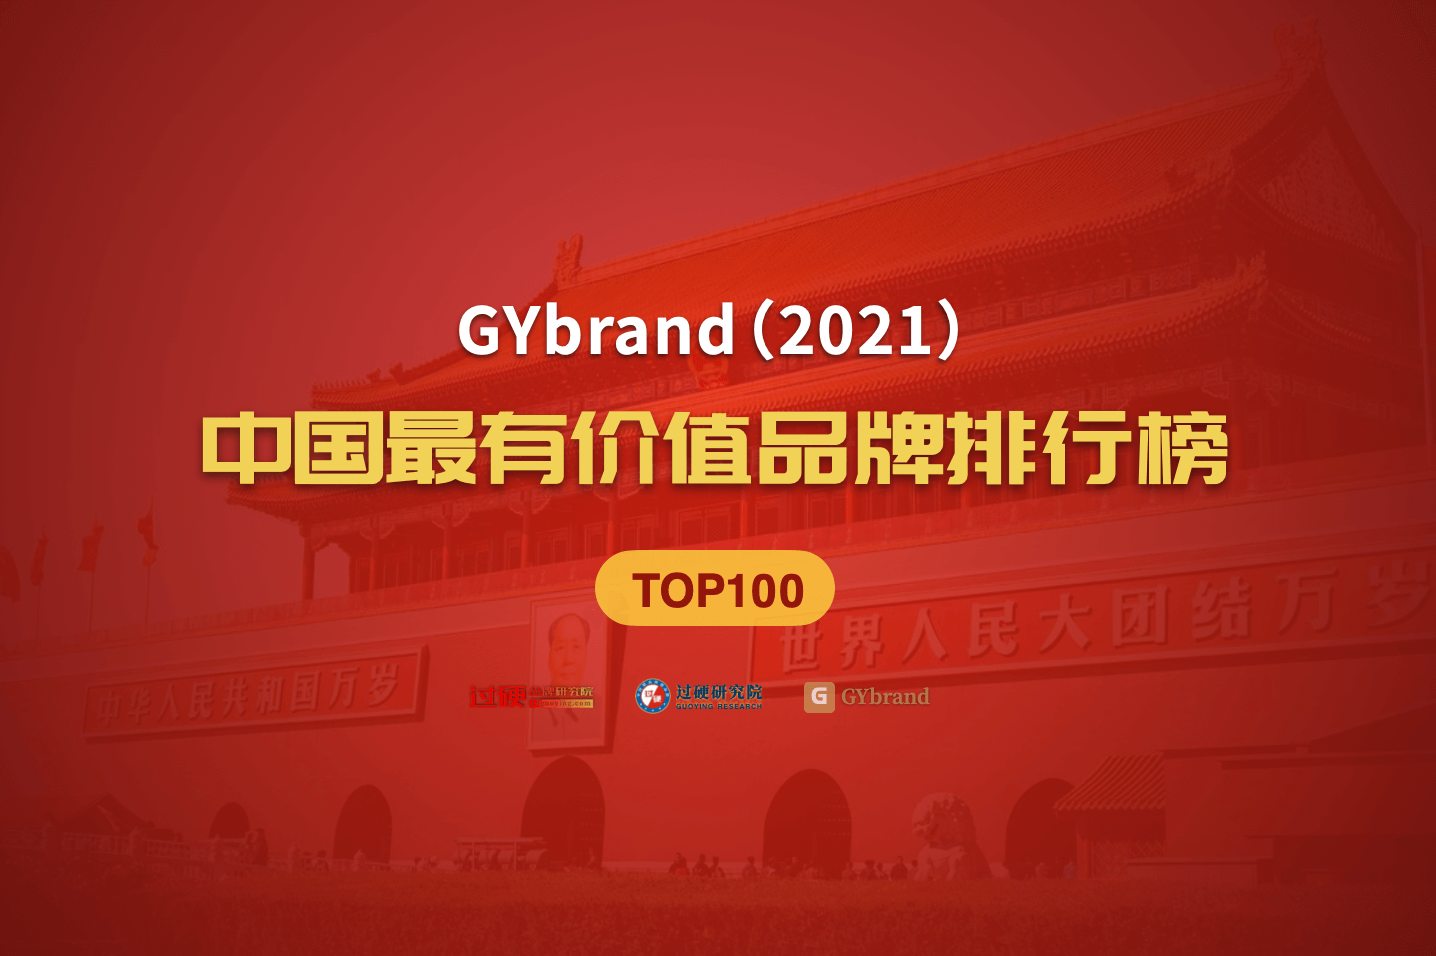 知名品牌价值评估机构gybrand联合过硬研究院发布了"2021中国品牌价值